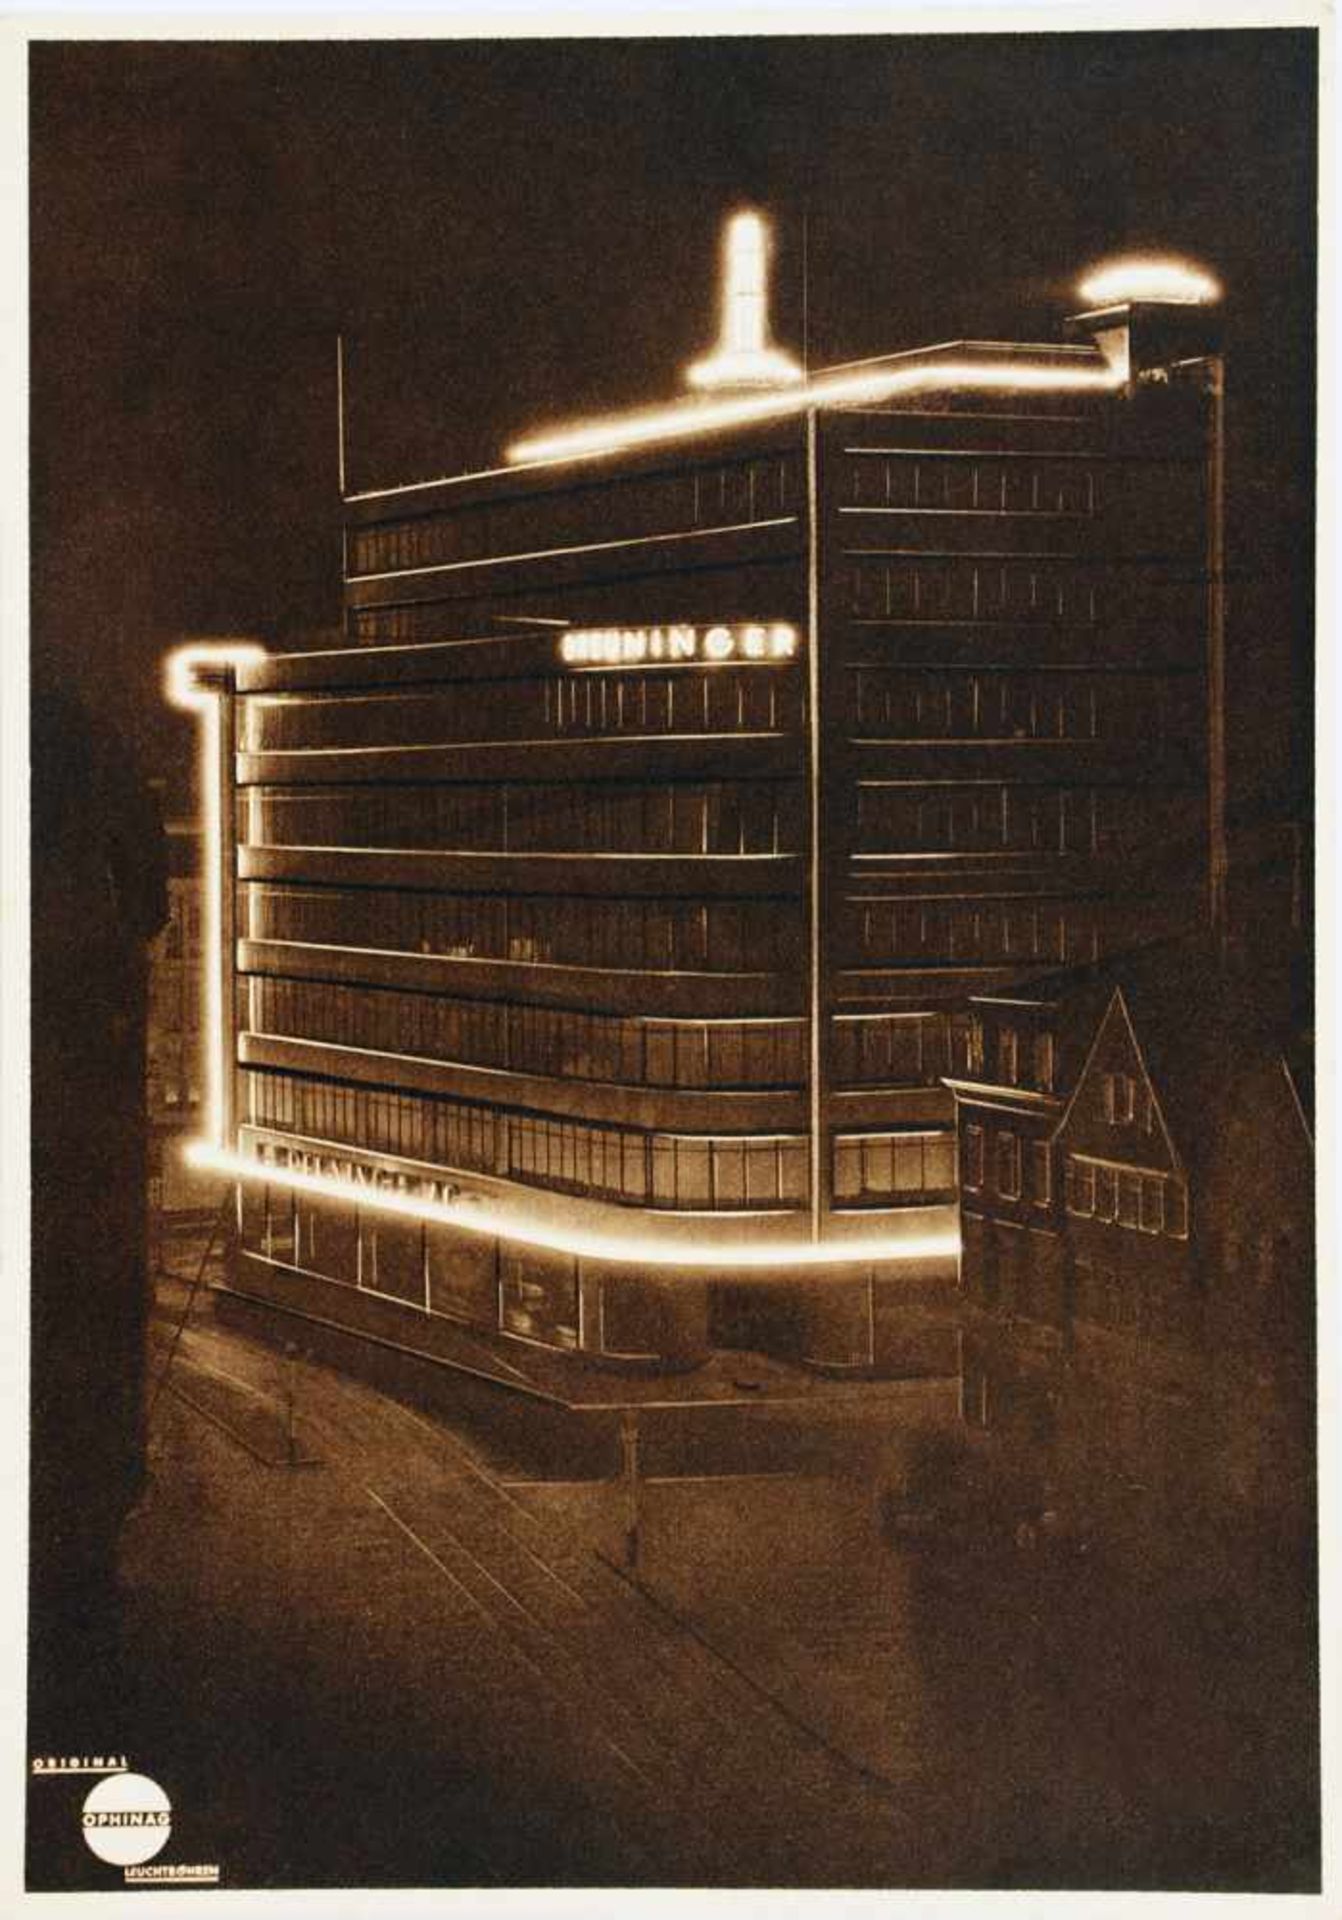 Ophinag. Original Leuchtstoffröhren. Leistungsproben. Berlin [um 1934]. 20 Tafeln nach - Image 2 of 3